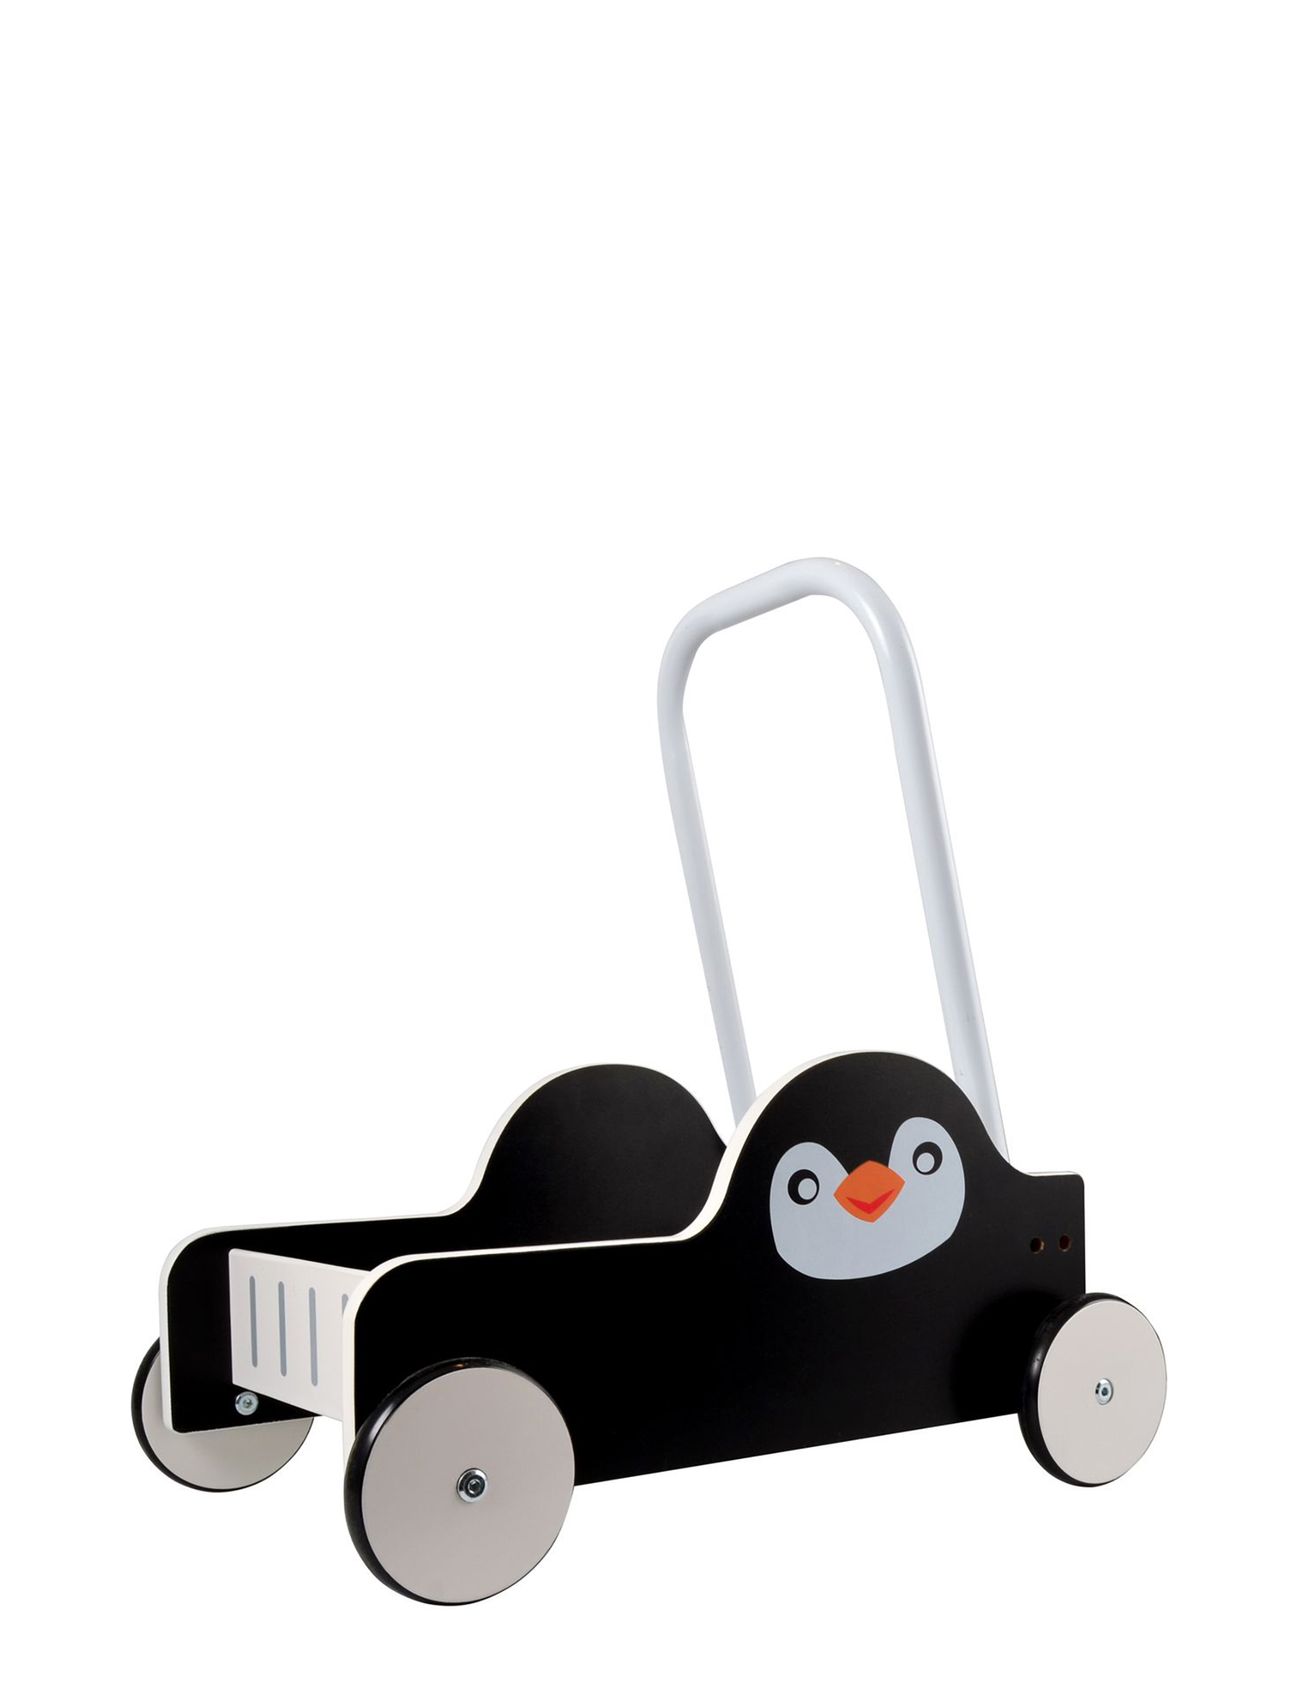 Magni Walker Cart Penguin Toys Baby Toys Push Toys Black Magni Toys